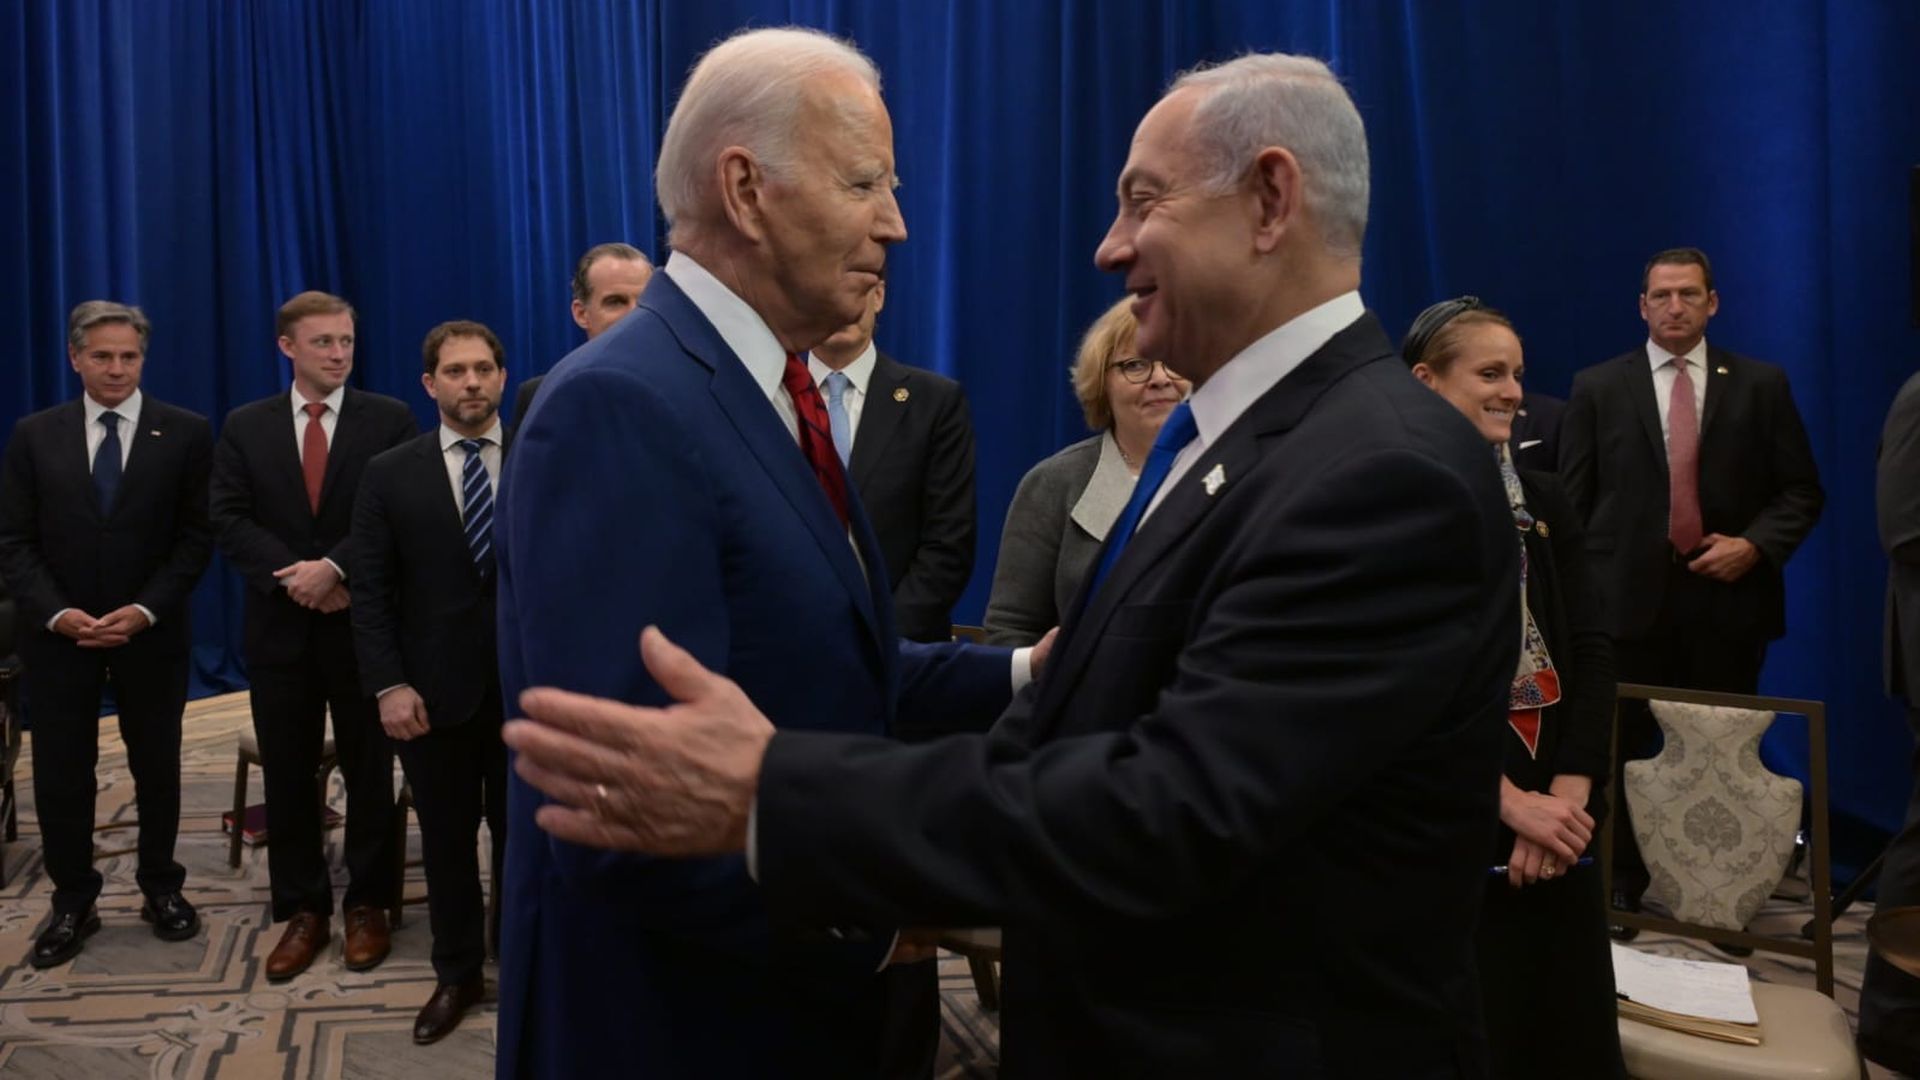 President Biden and Israeli Prime Minister Benjamin Netanyahu shake hands in New York.